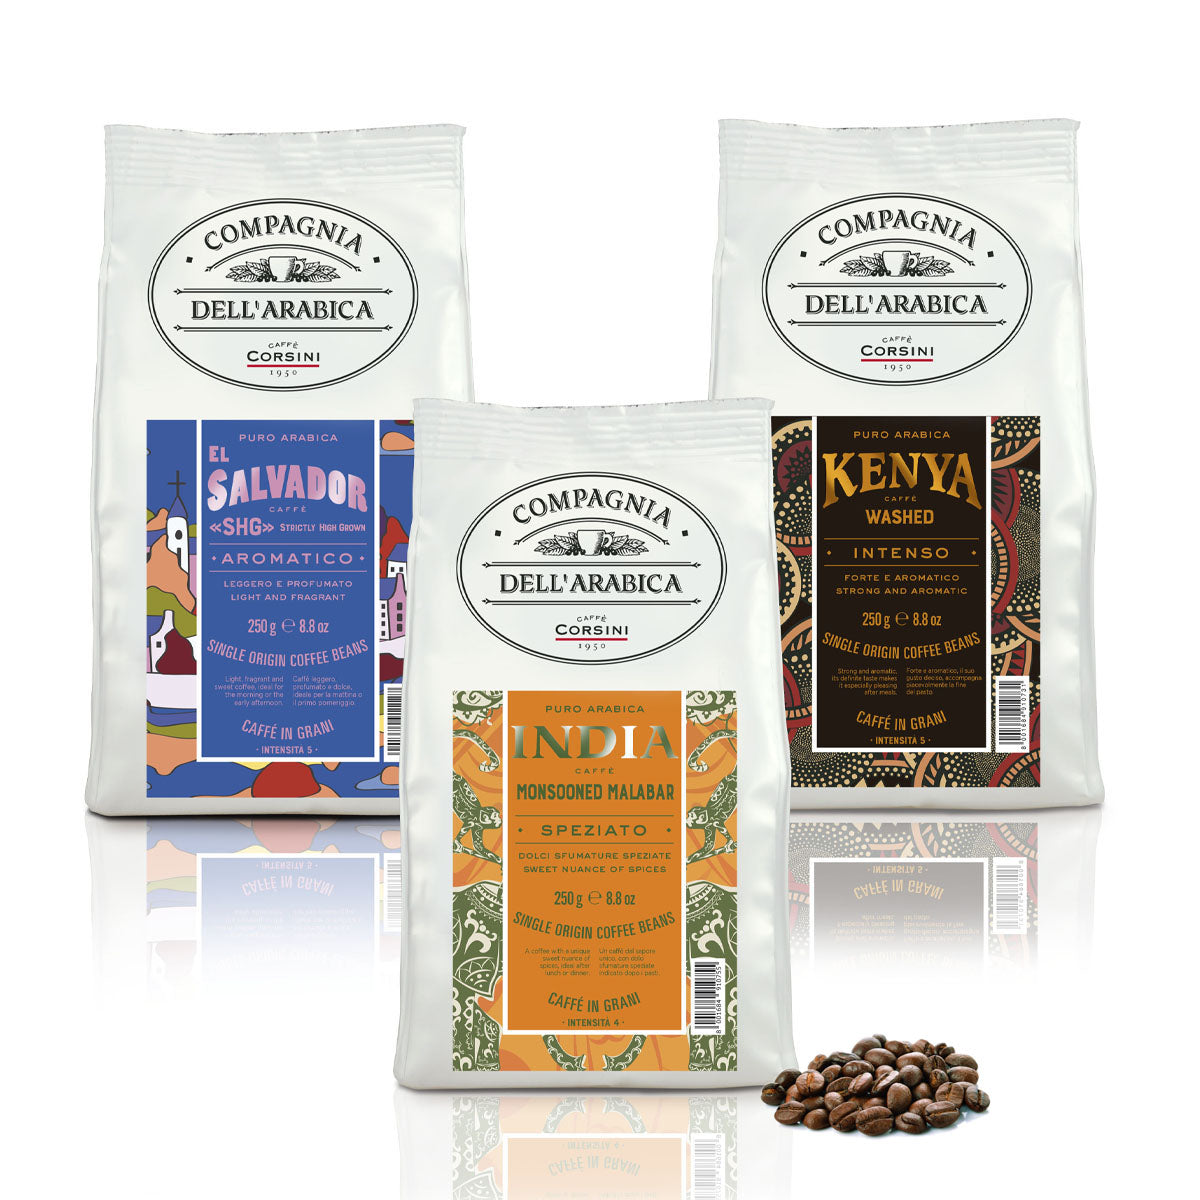 3 Coffee beans | El Salvador - India - Kenya | 3 X 250g